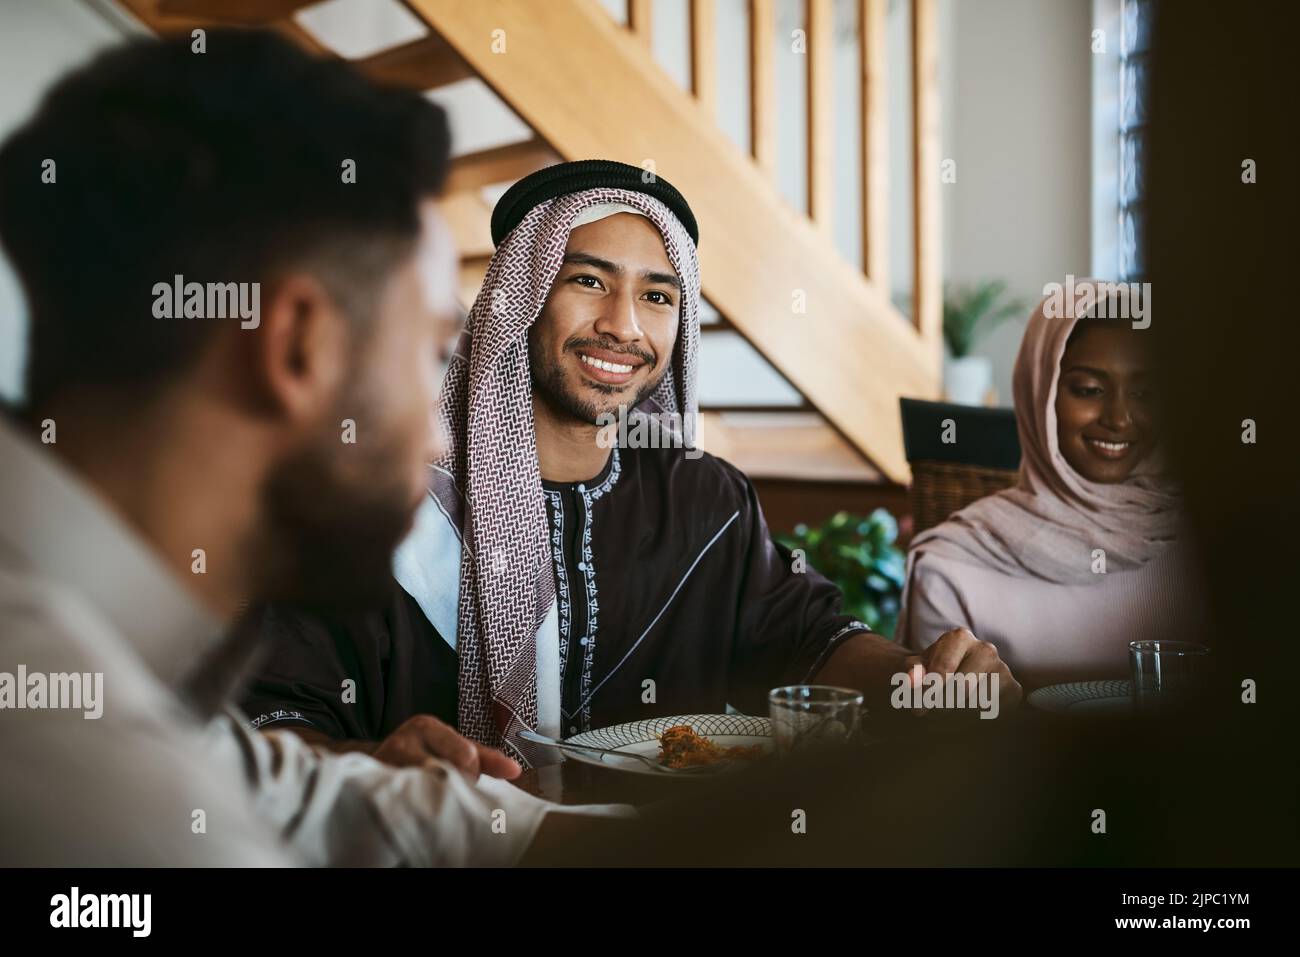 Uomo musulmano, arabo e islamico che gusta un pasto per eid, ramadan o che si rompe con la famiglia mentre celebra la religione, la cultura Santa e la fede islamica Foto Stock